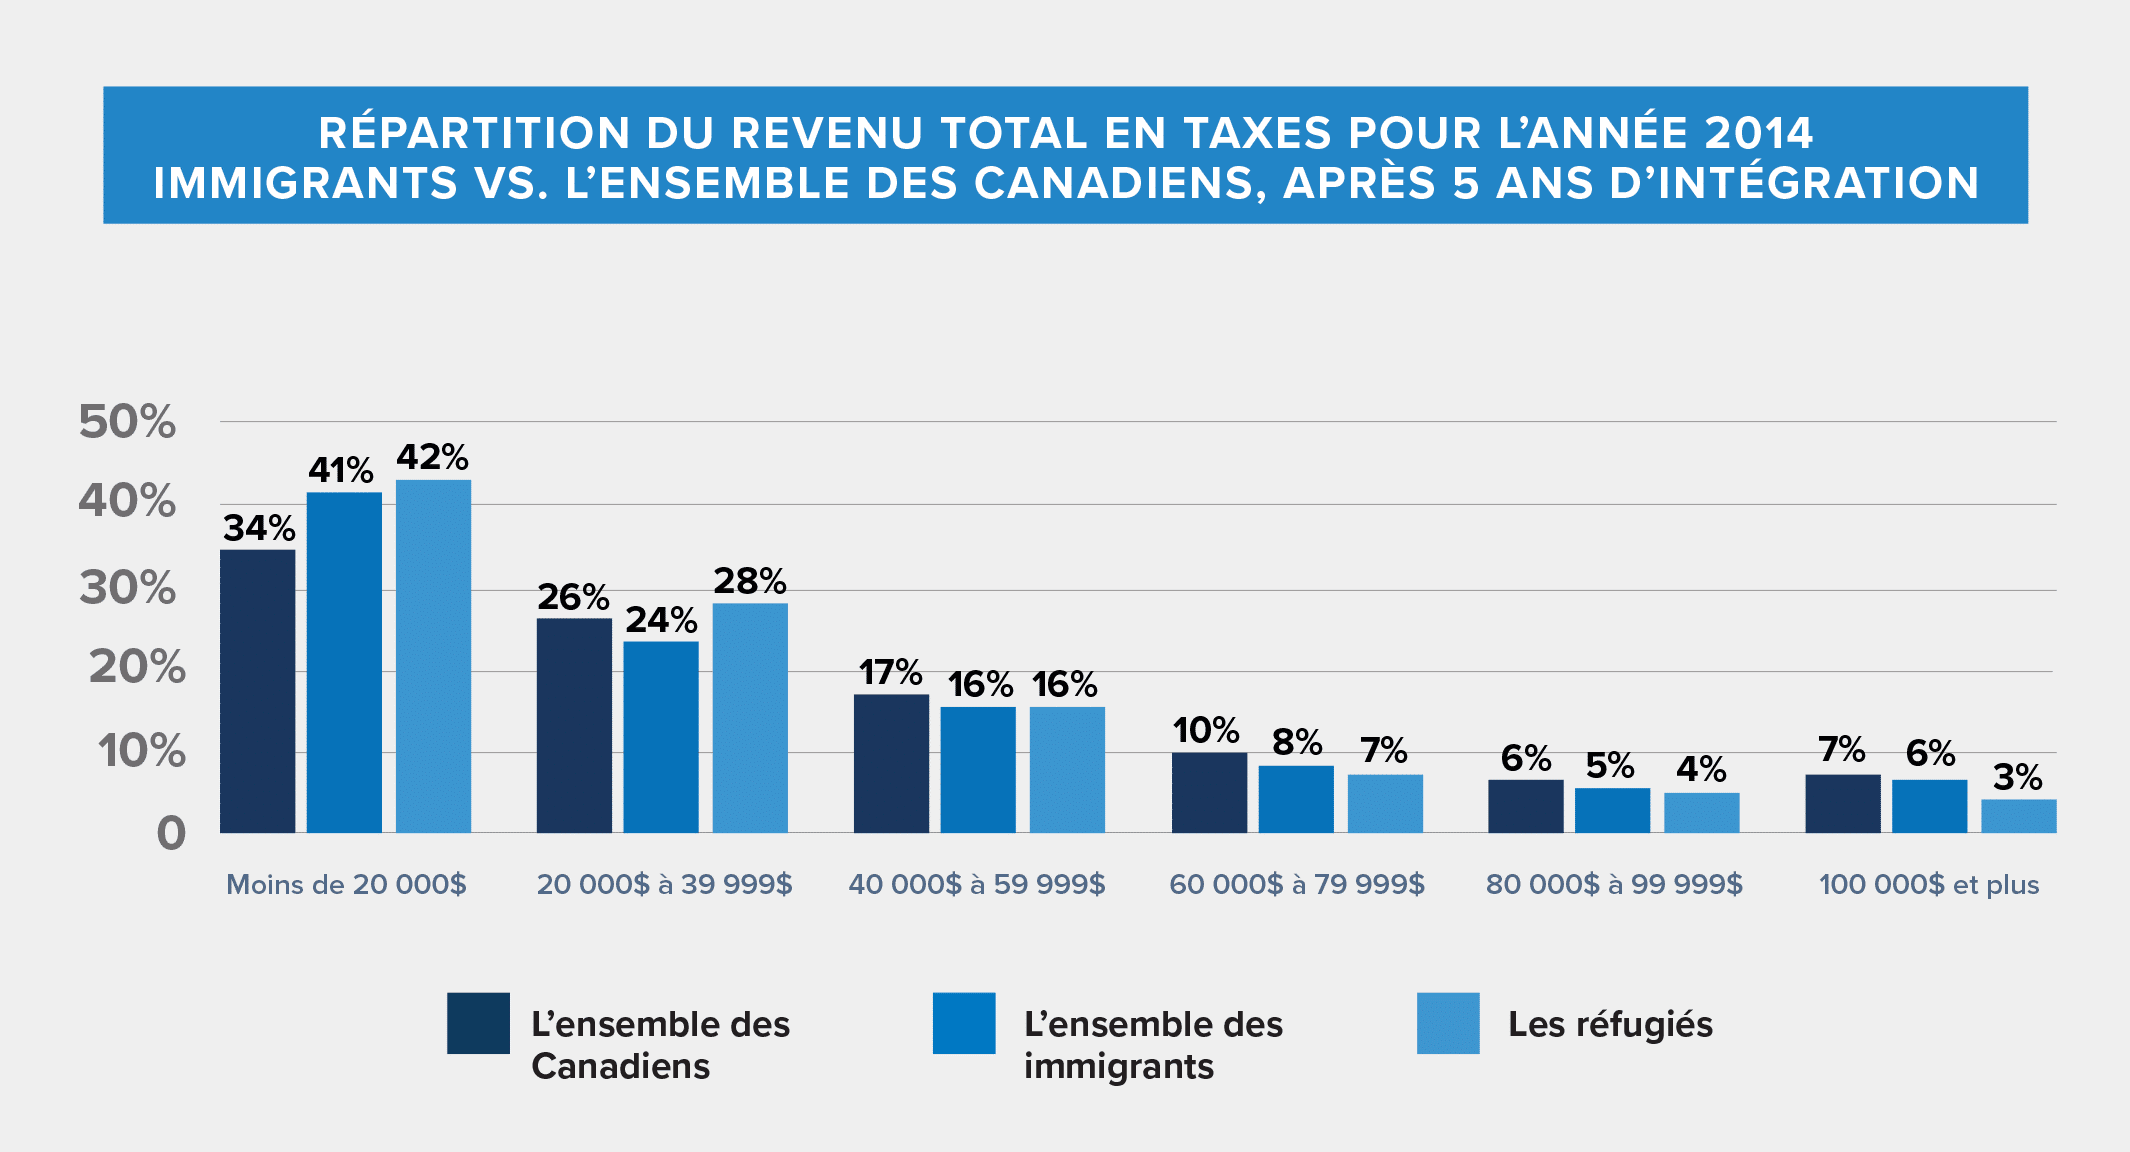 Graphique montrant la répartition du revenu total en taxes pour les immigrants après cinq ans d’intégration, versus l’ensemble des Canadiens pour l’année 2014.